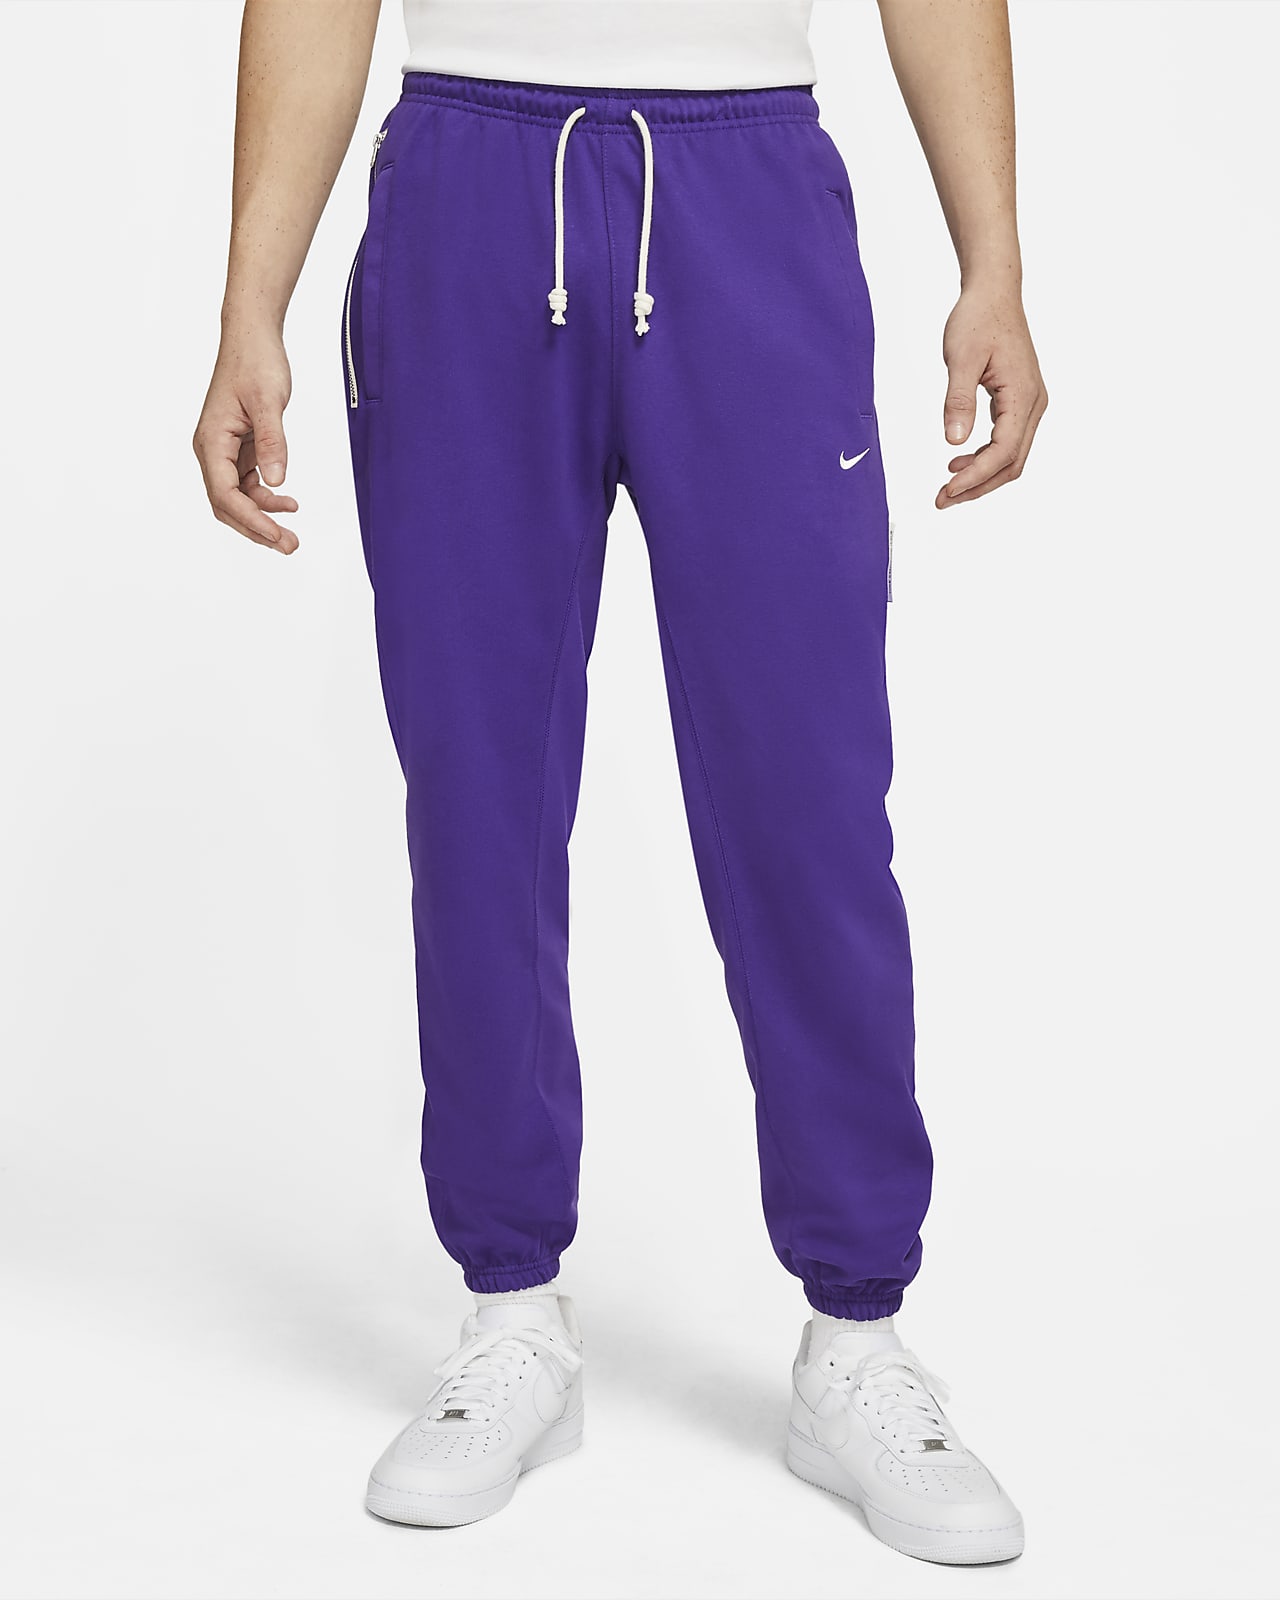 nike purple track pants